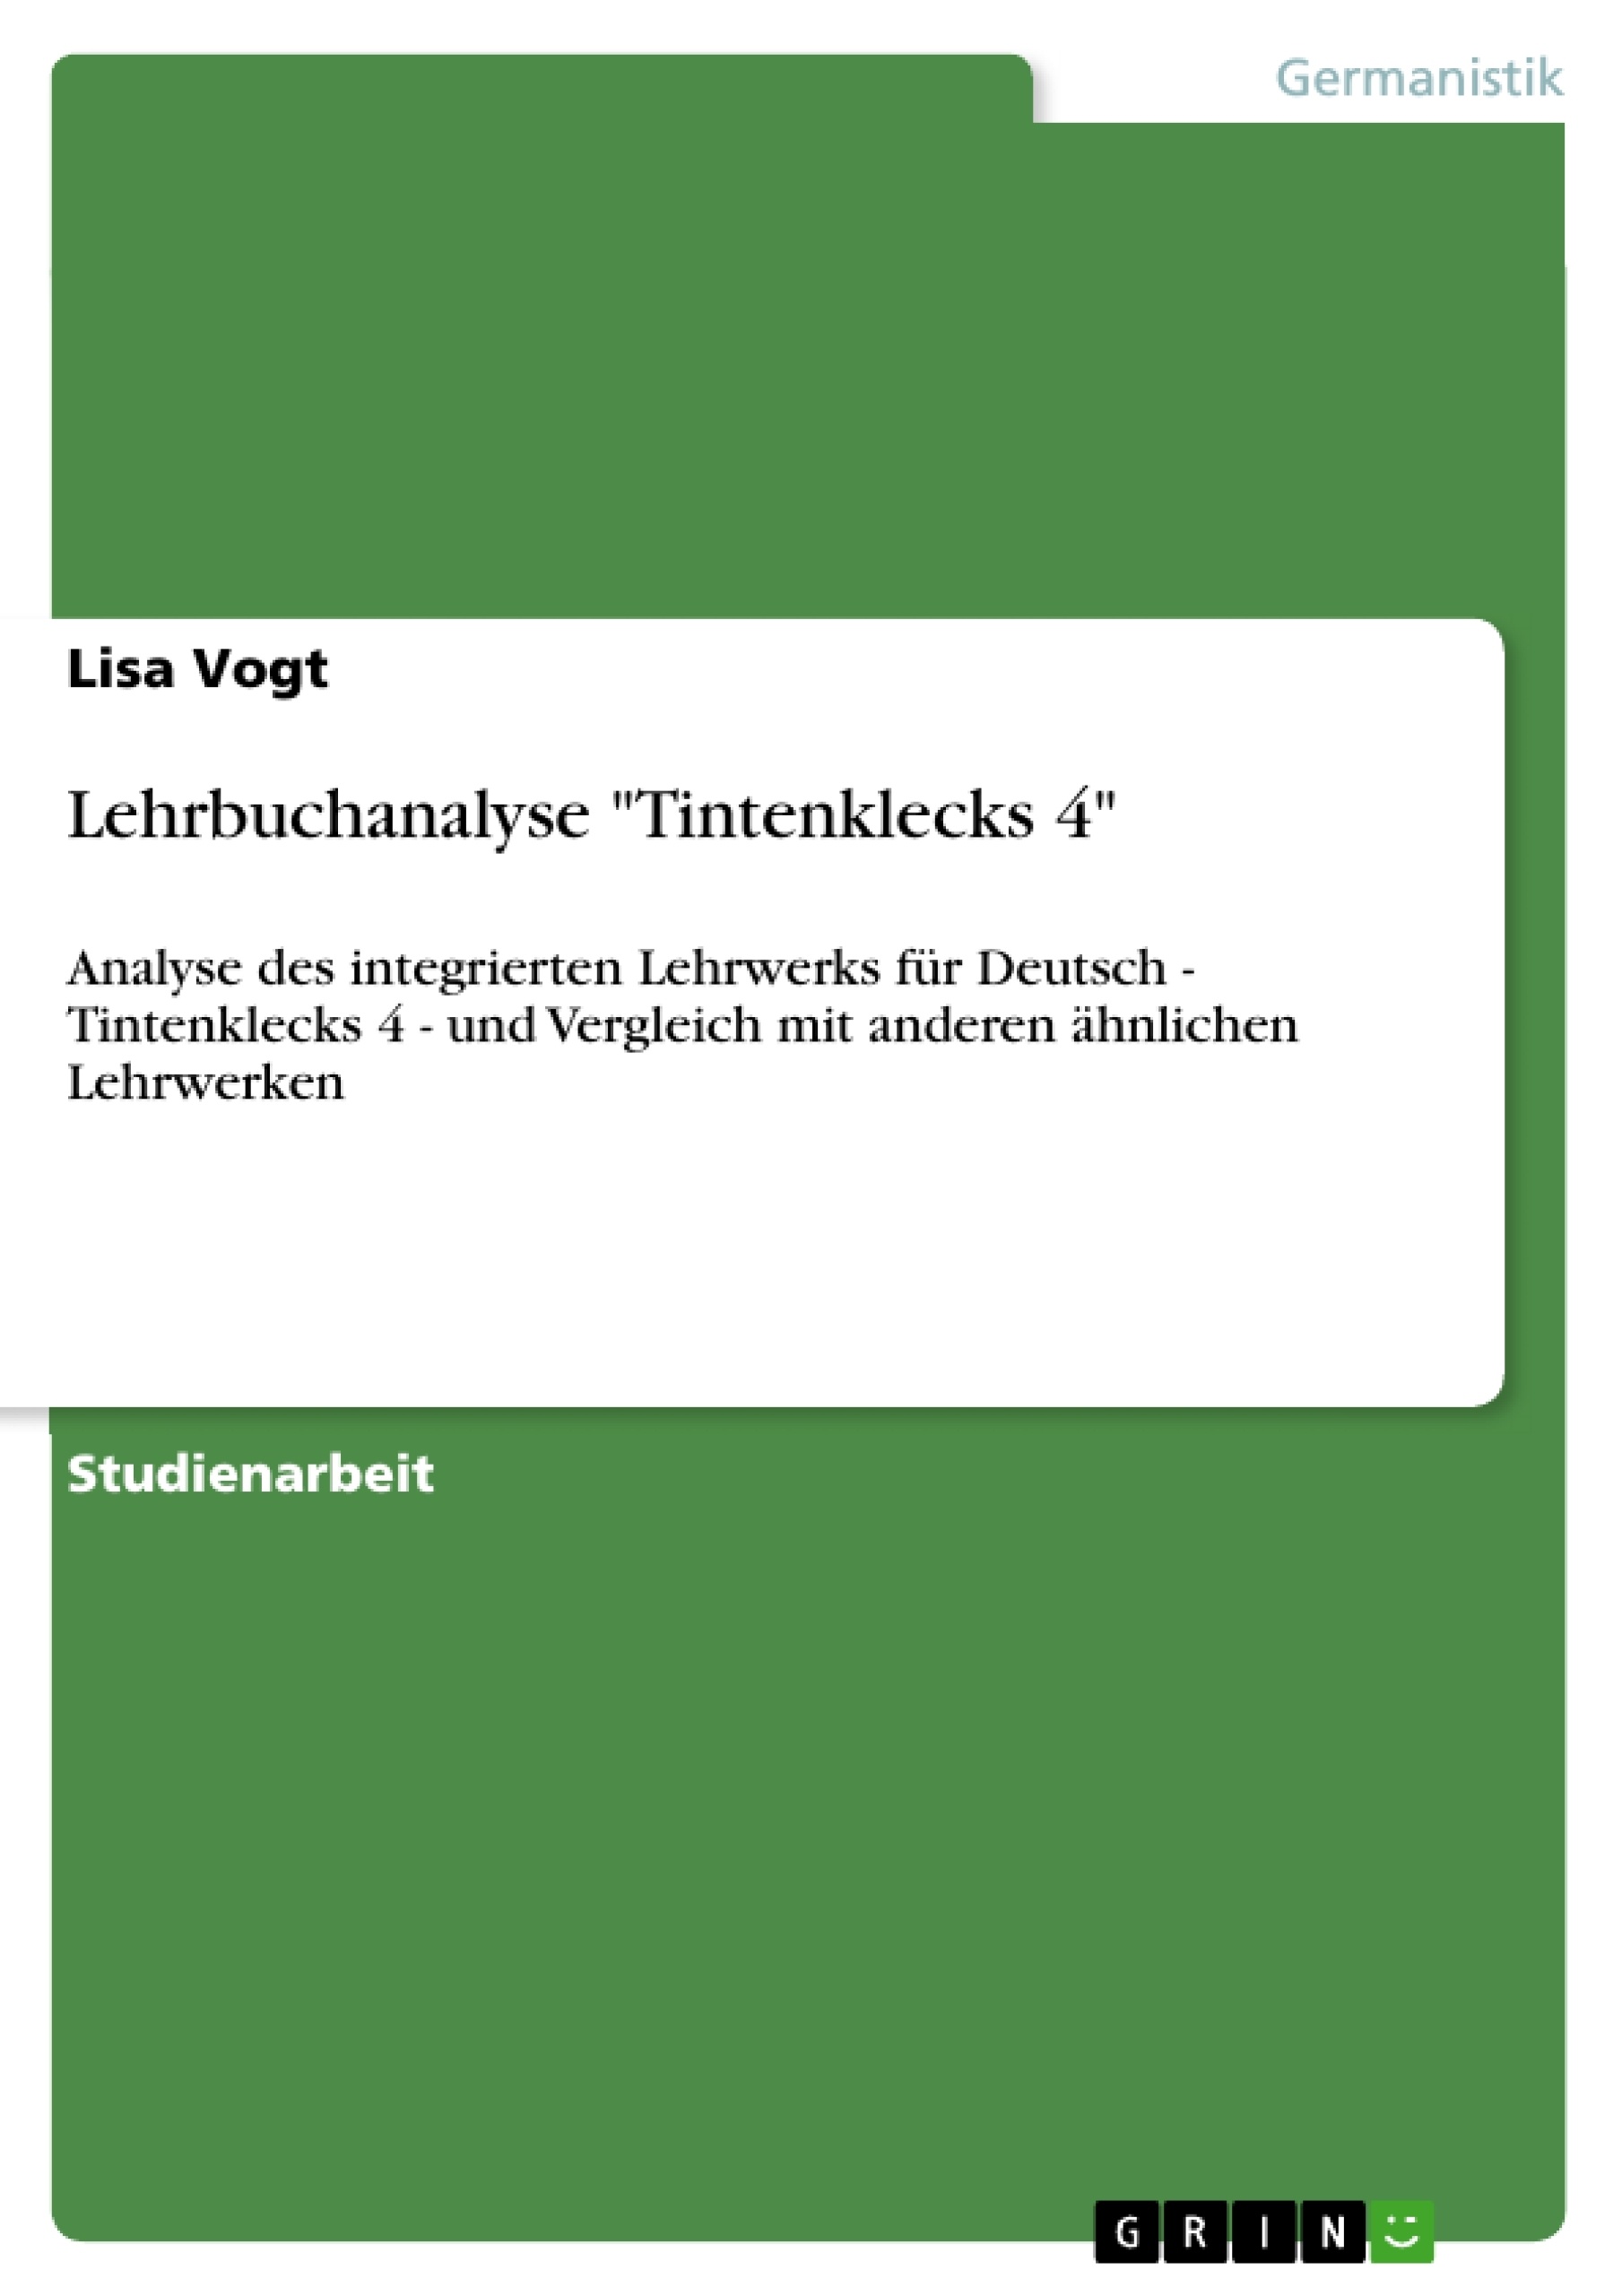 Titre: Lehrbuchanalyse "Tintenklecks 4"